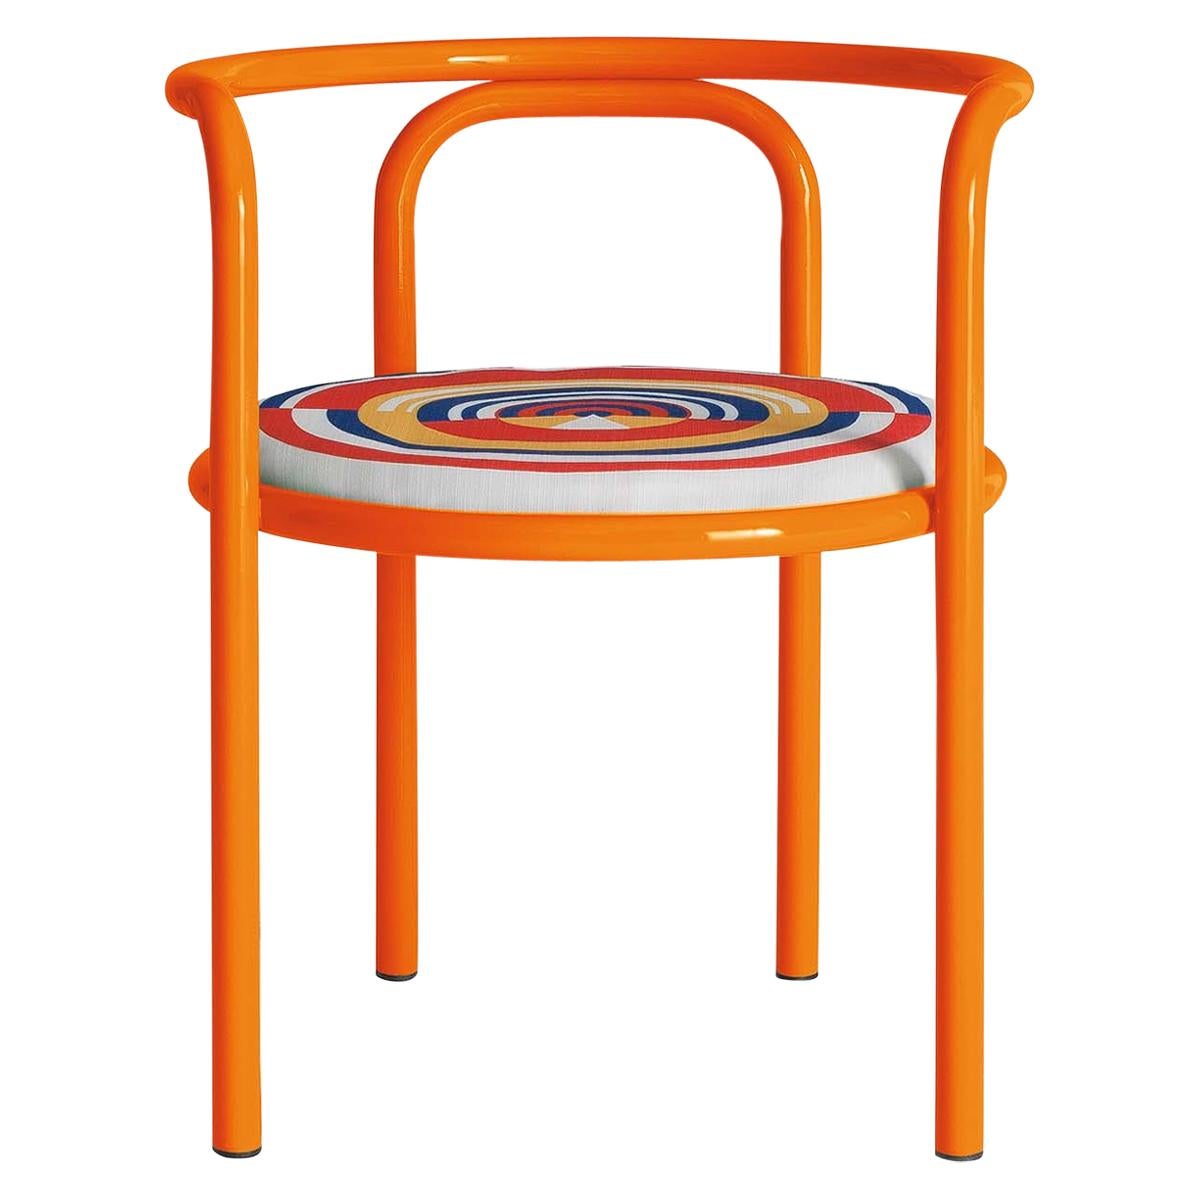 Locus Solus Orange Chair by Gae Aulenti